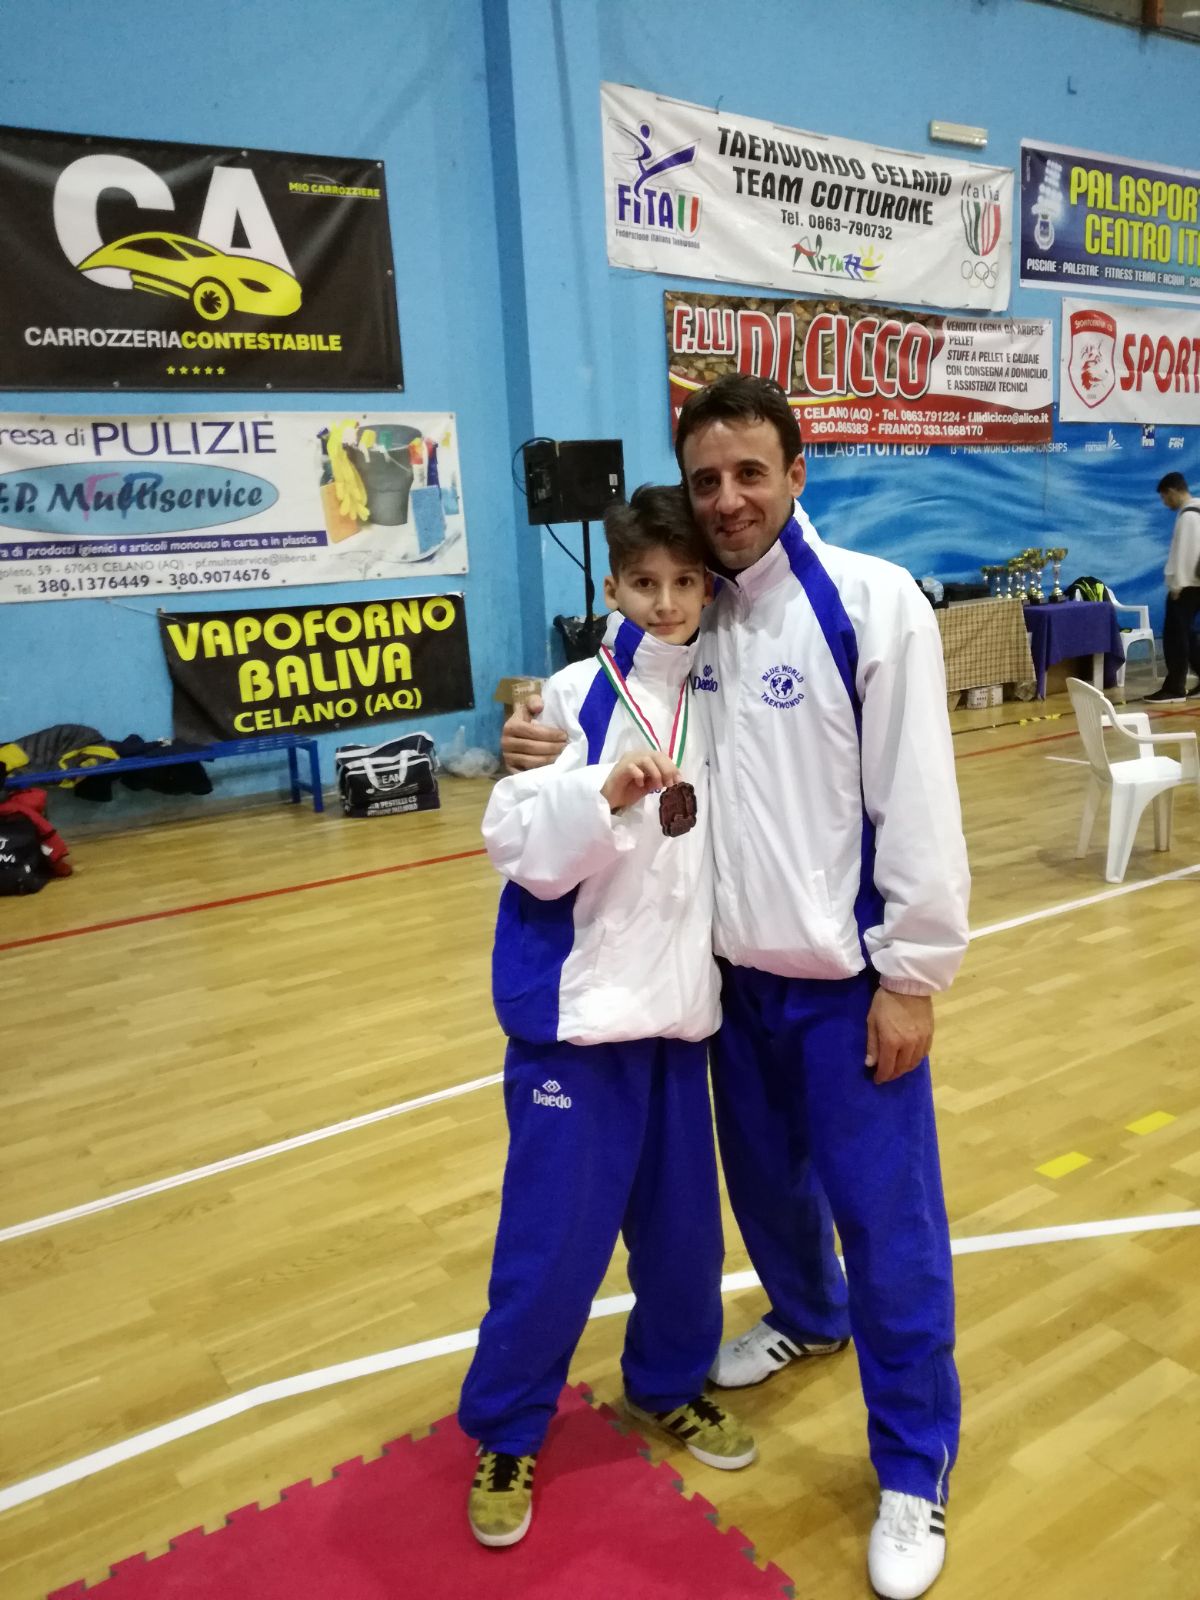  Campionato interregionale Abruzzo 2017: bronzo per Giuseppe Caputo alla manifestazione di Celano